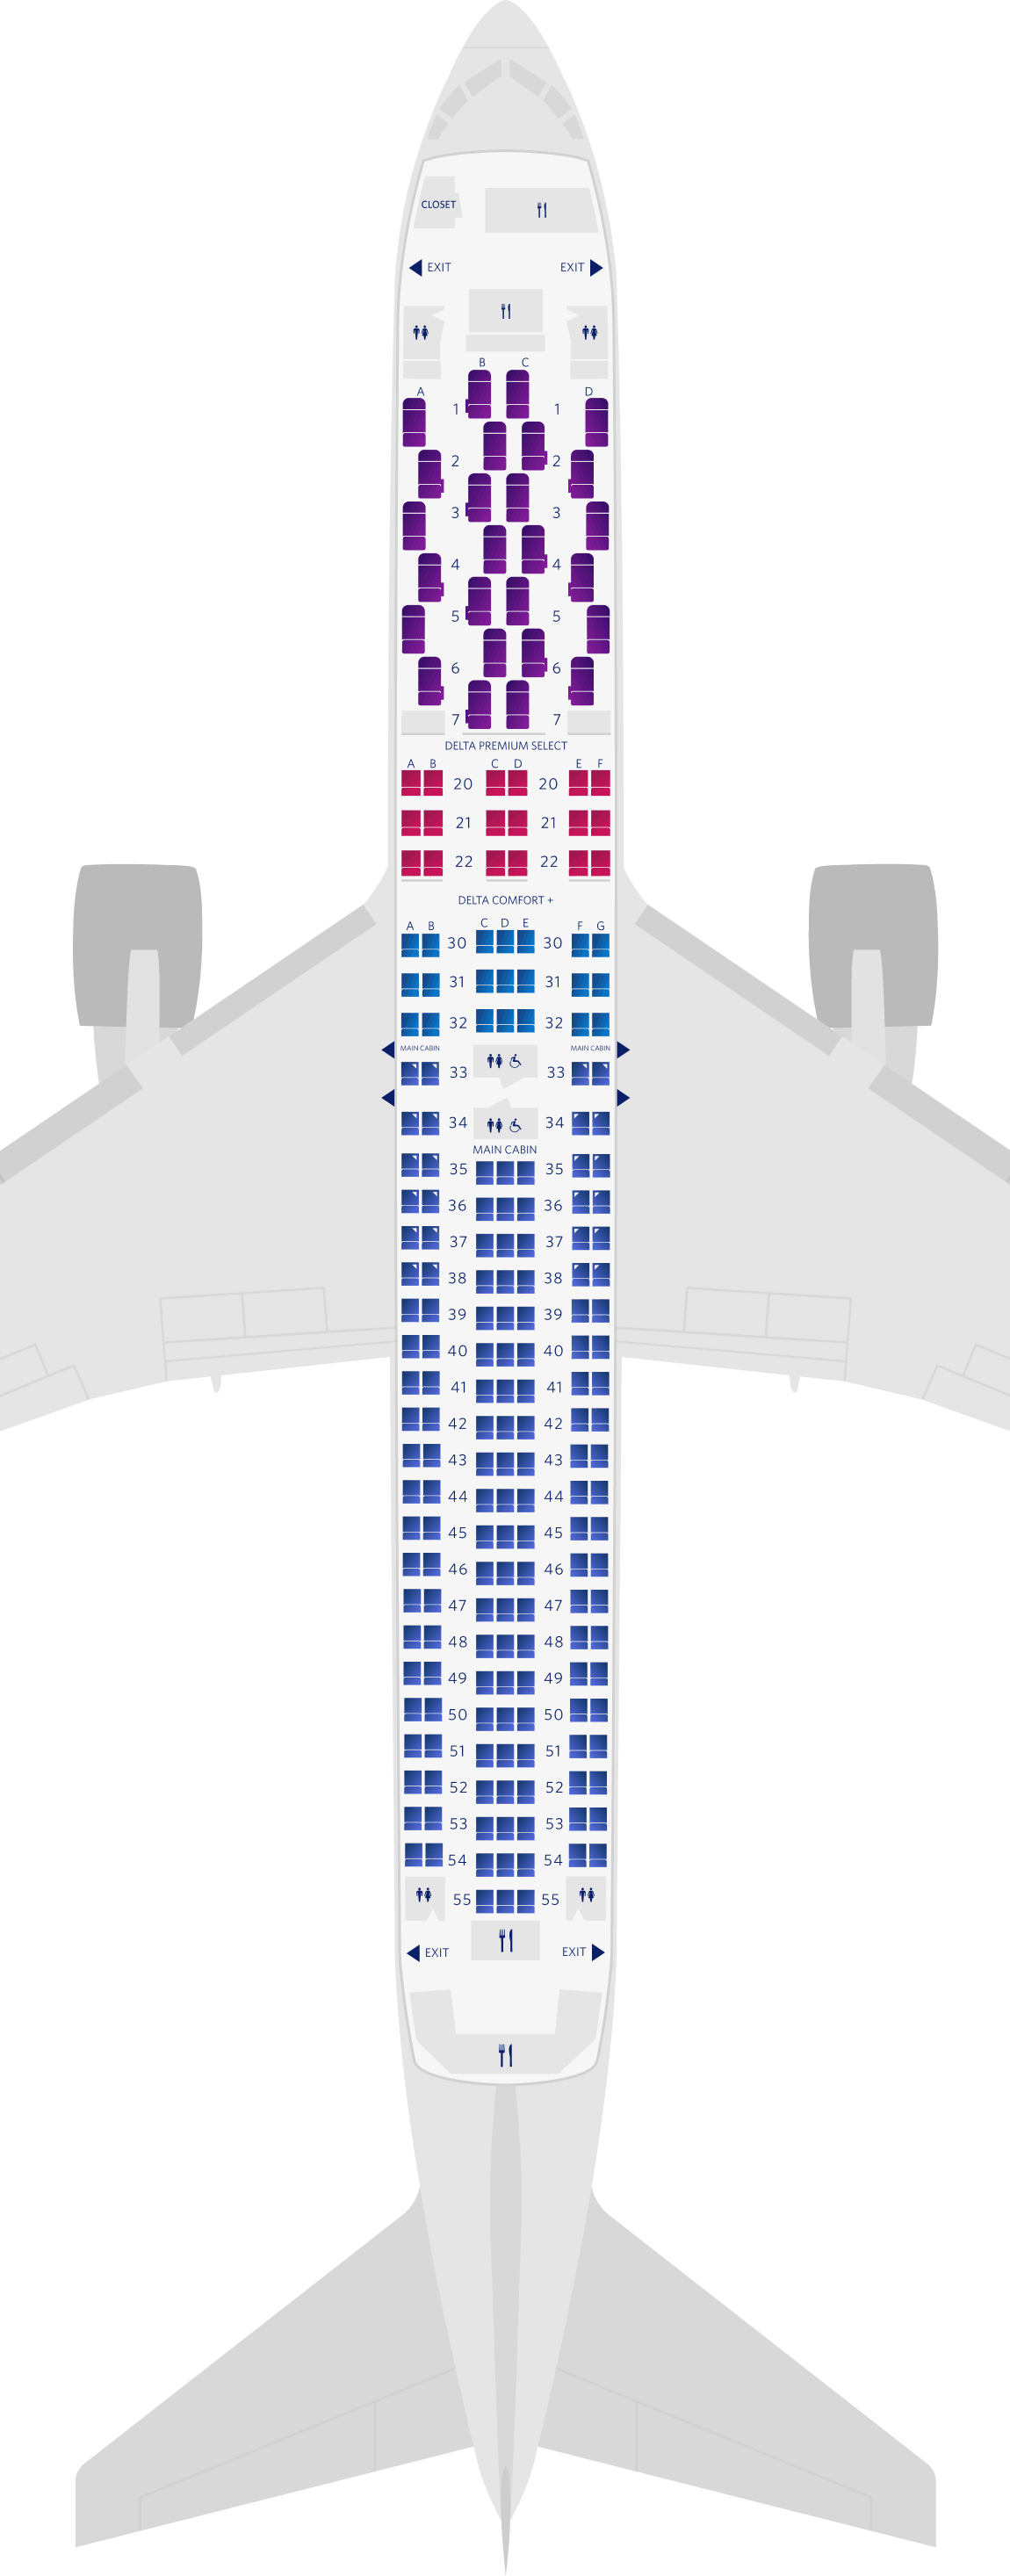 보잉 767-300ER (76K) 좌석 배치도